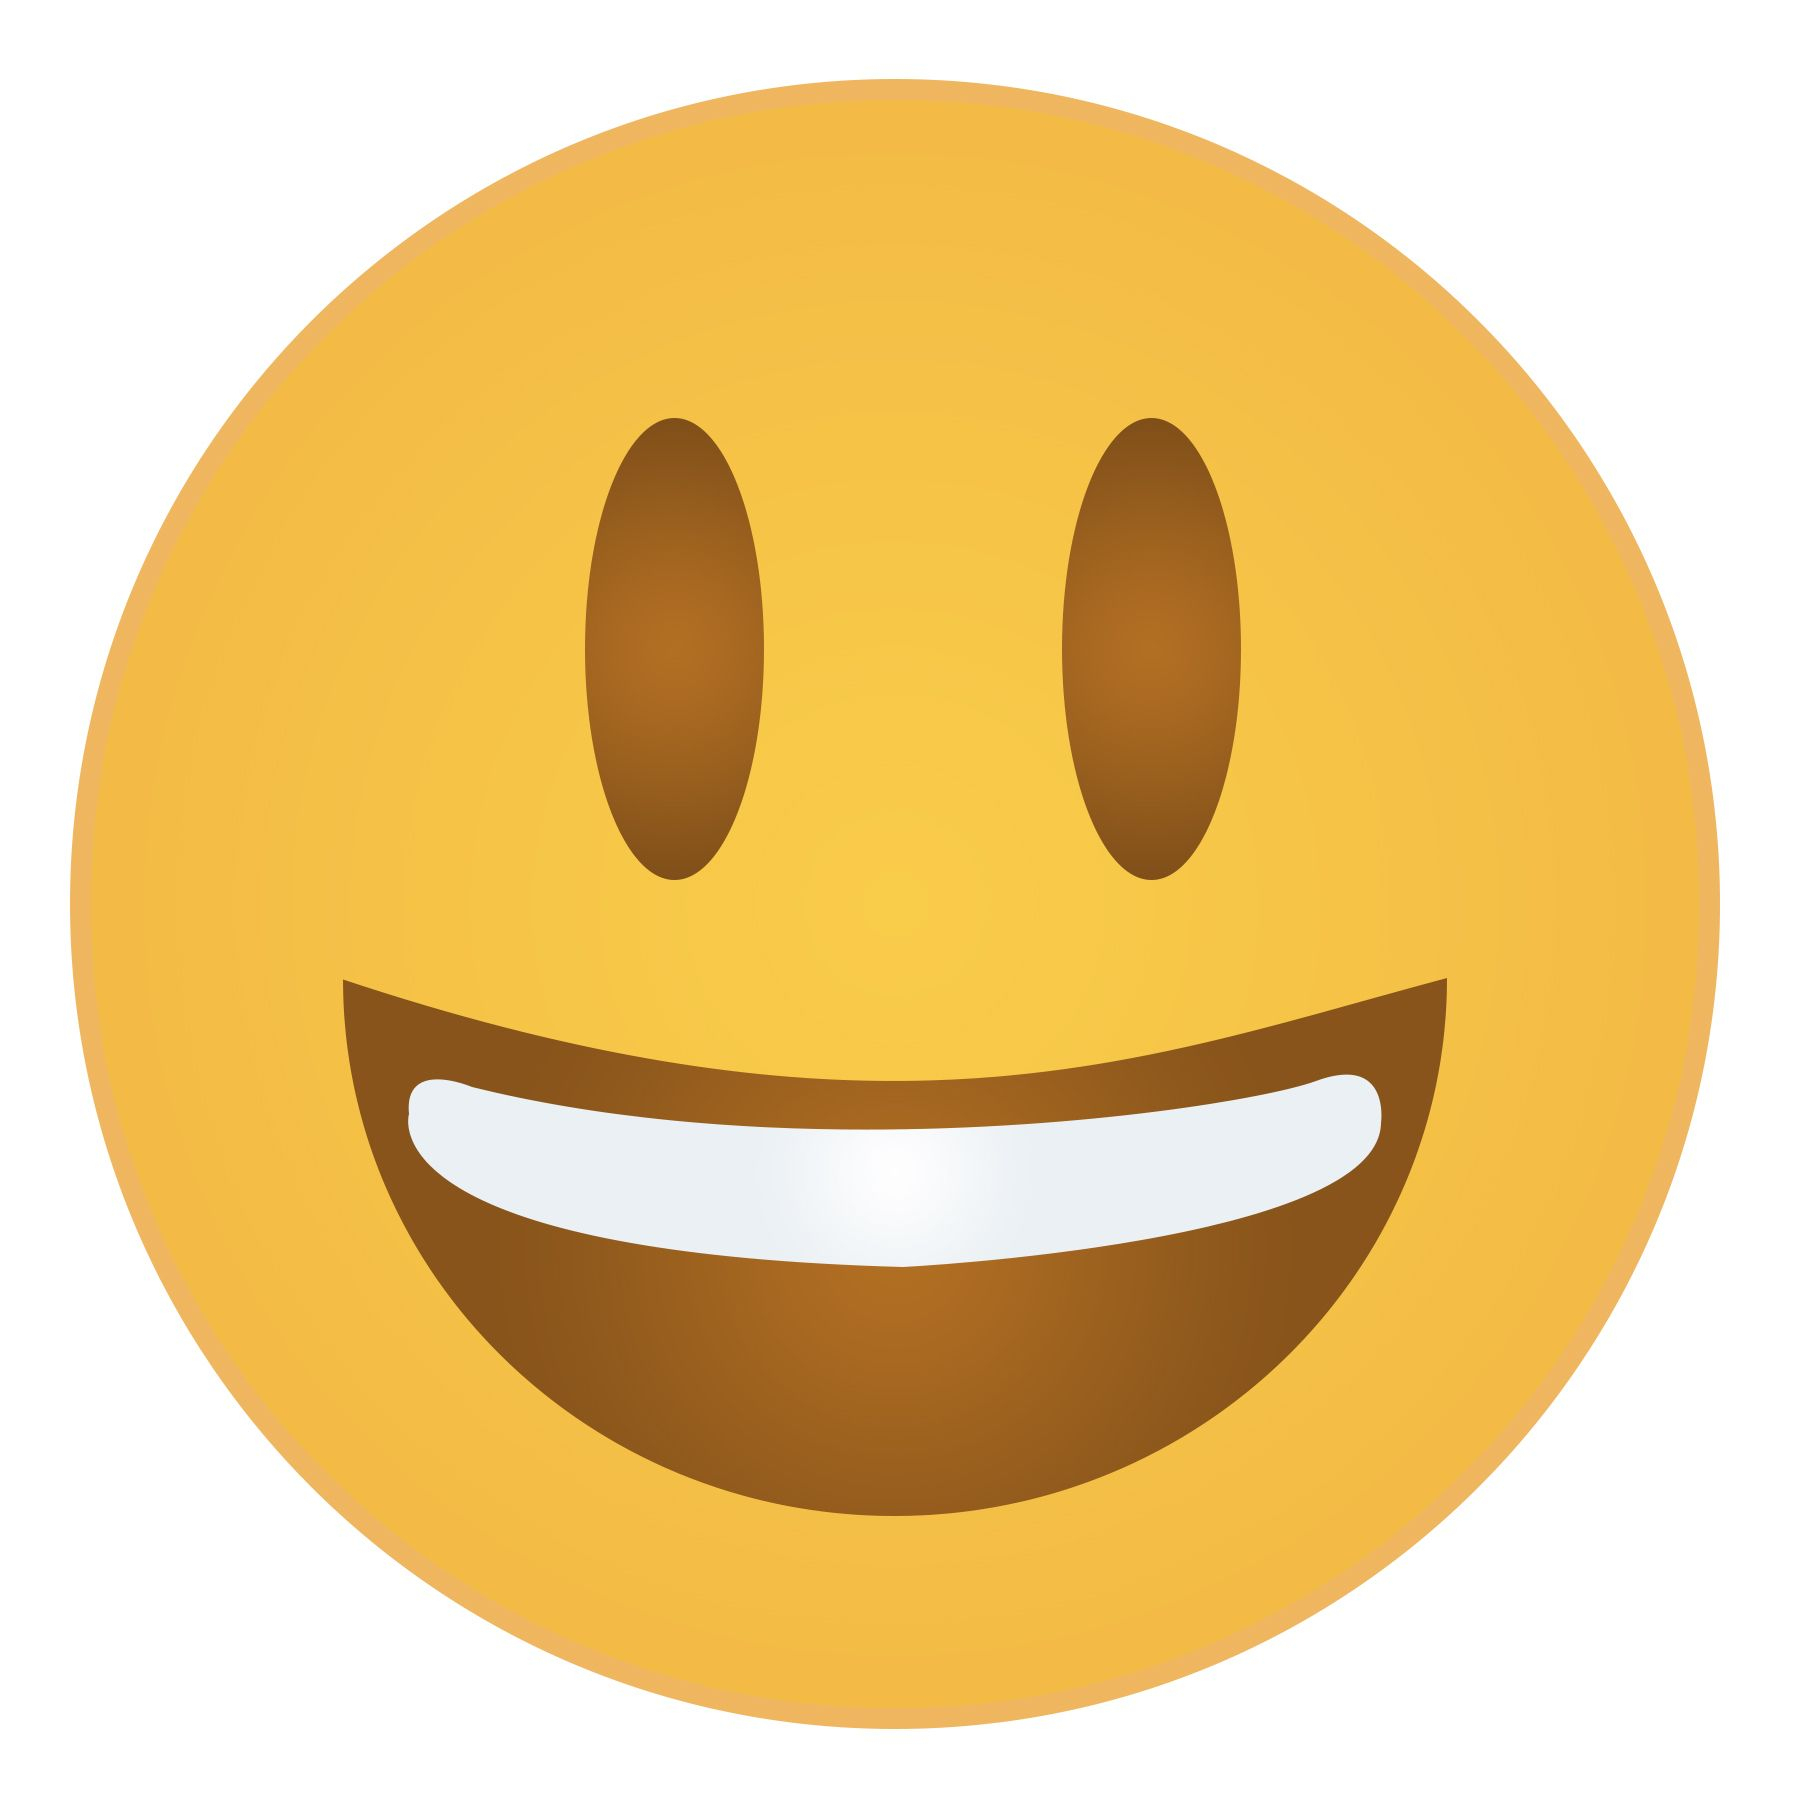 Free Printable Emoji Faces - Printable  | Emoji In 2019 - Free Printable Emoji Faces